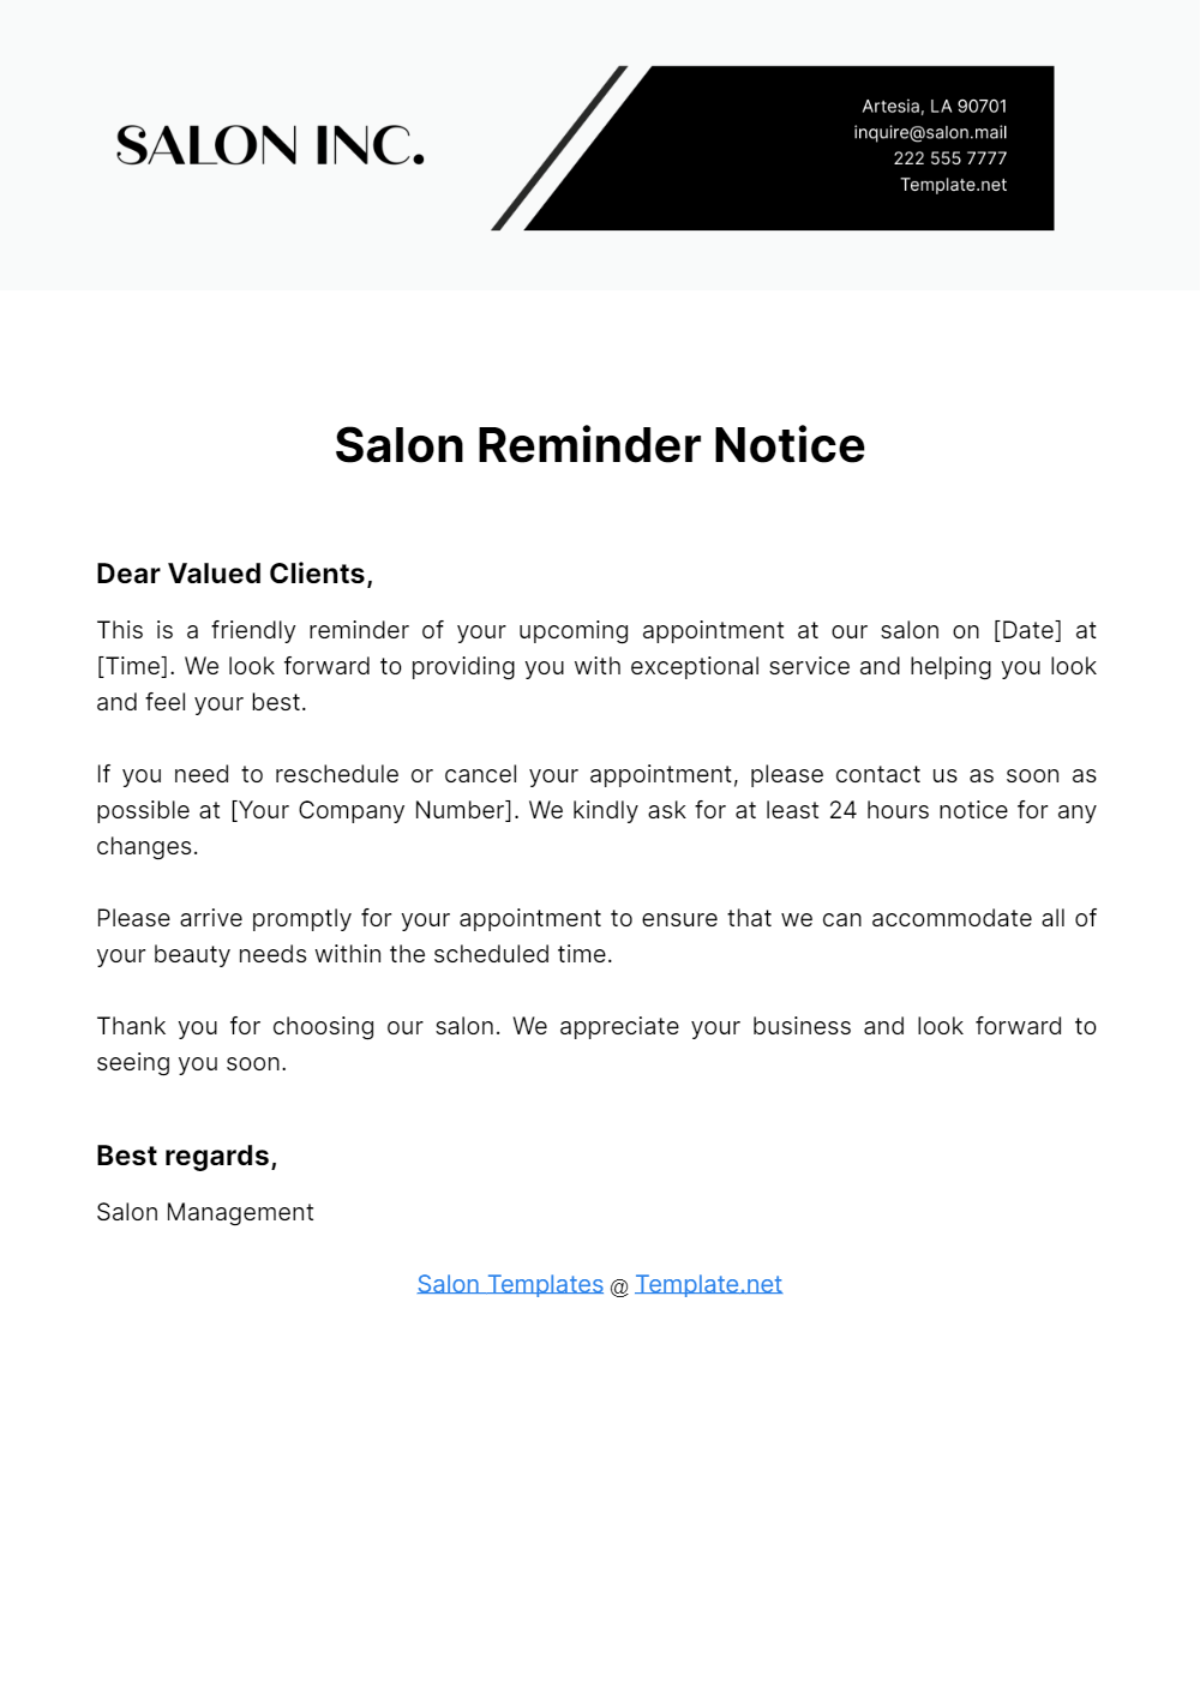 Salon Reminder Notice Template